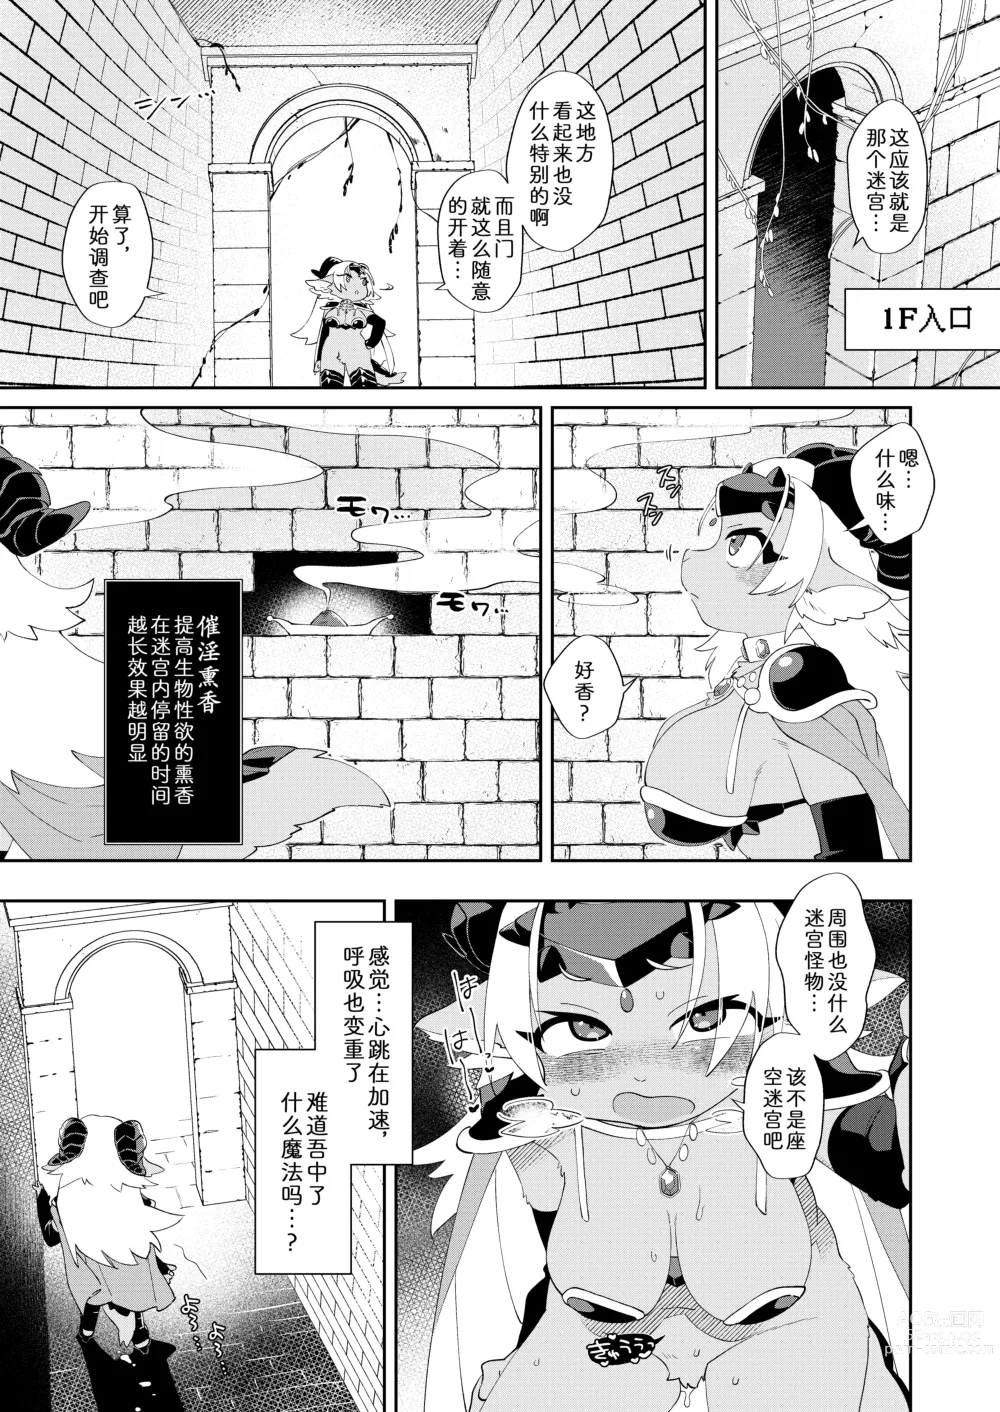 Page 6 of doujinshi 因为是魔王所以说色情迷宫什么的当然随便通关了